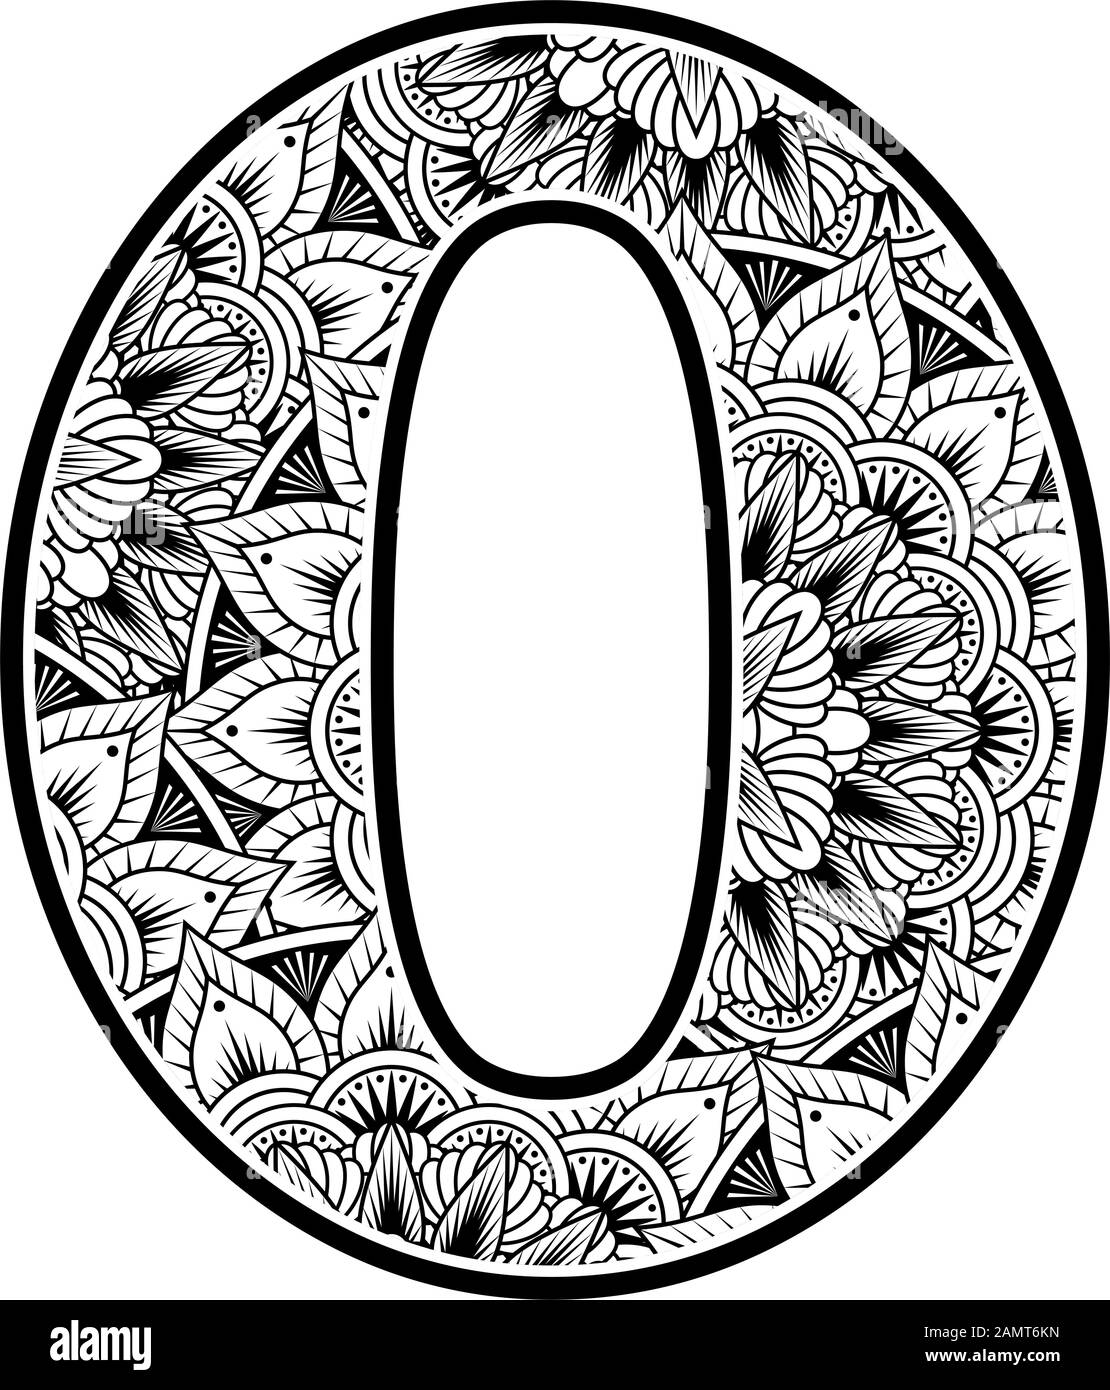 Nummer 0 mit abstrakten Blumenschmuck in Schwarzweiß. Design inspiriert von Mandala-Kunststil zum Färben. Isoliert auf weißem Hintergrund Stock Vektor